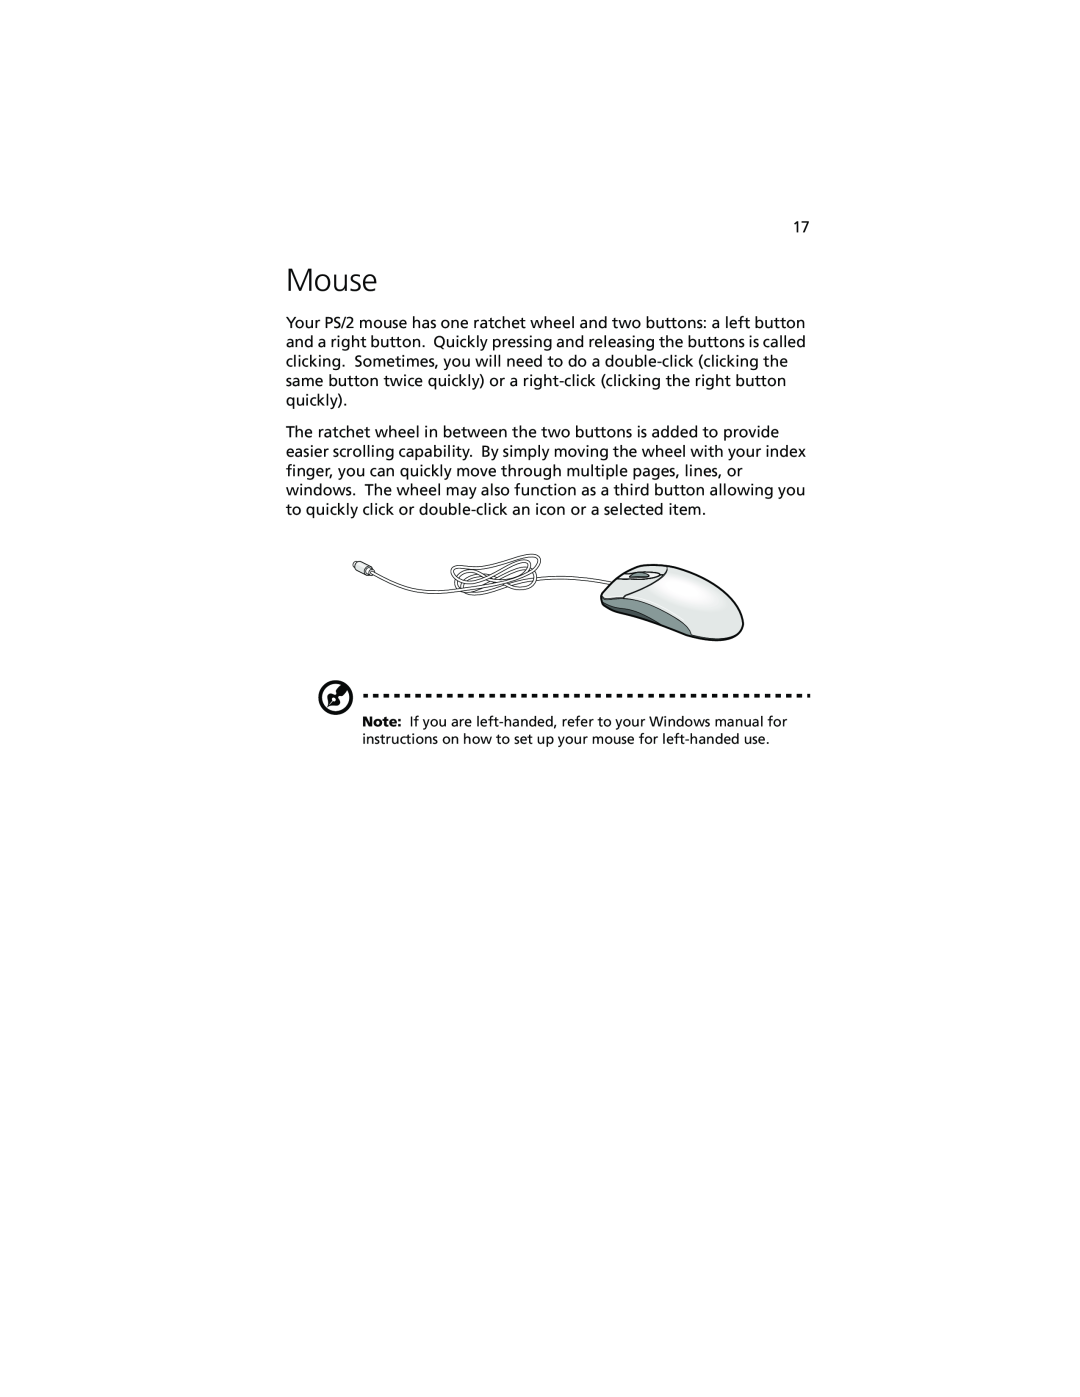 Acer Altos G610 manual Mouse 